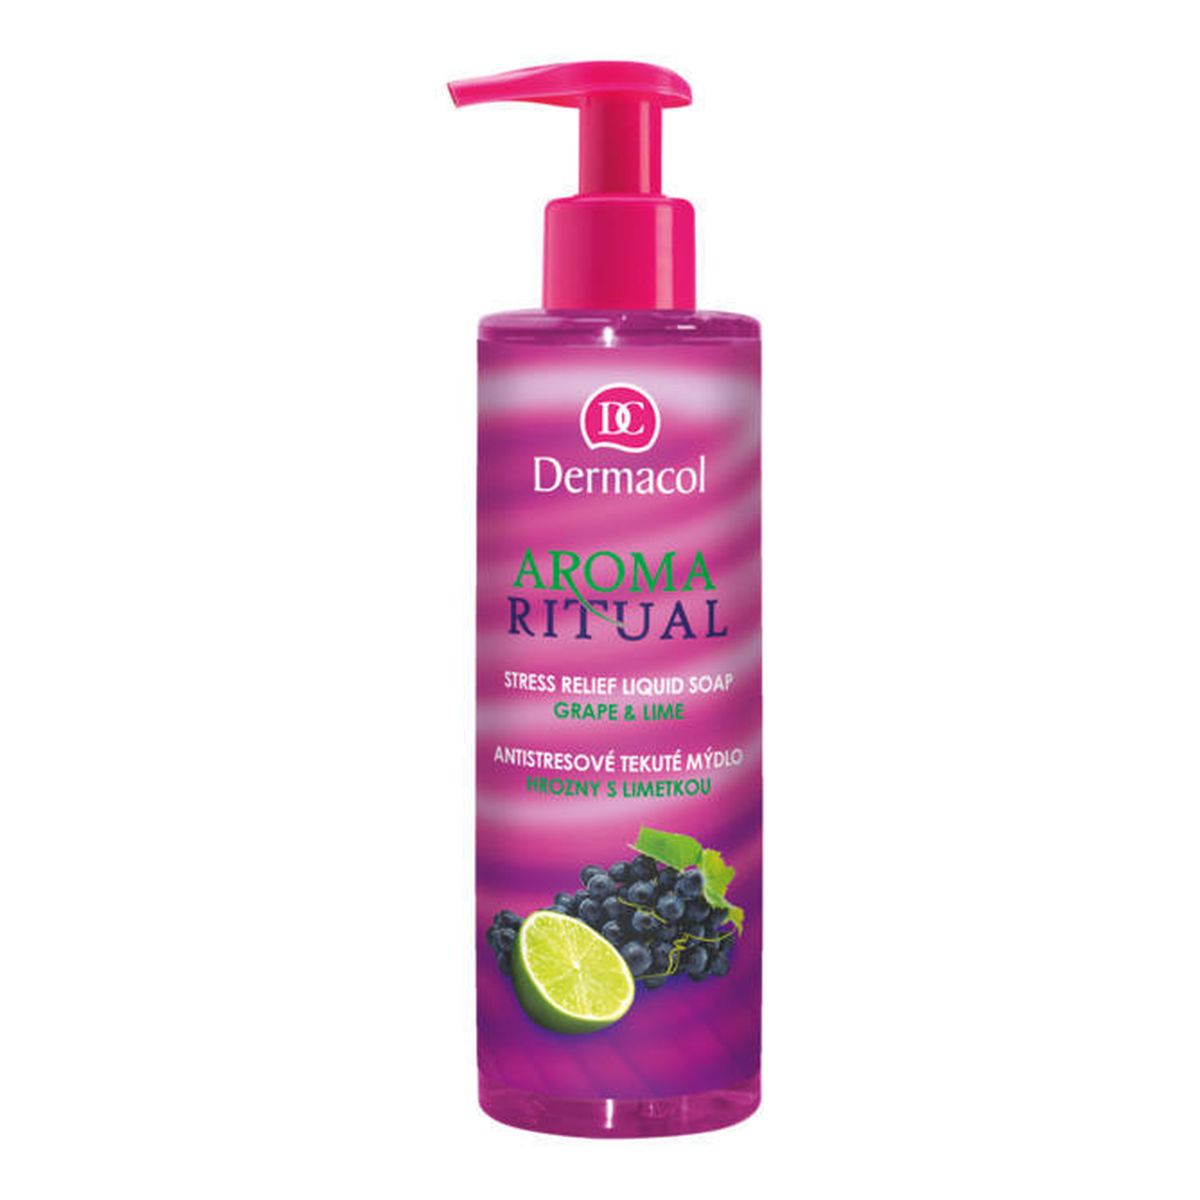 Dermacol AROMA RITUAL mydło w płynie Grape & Lime 250ml